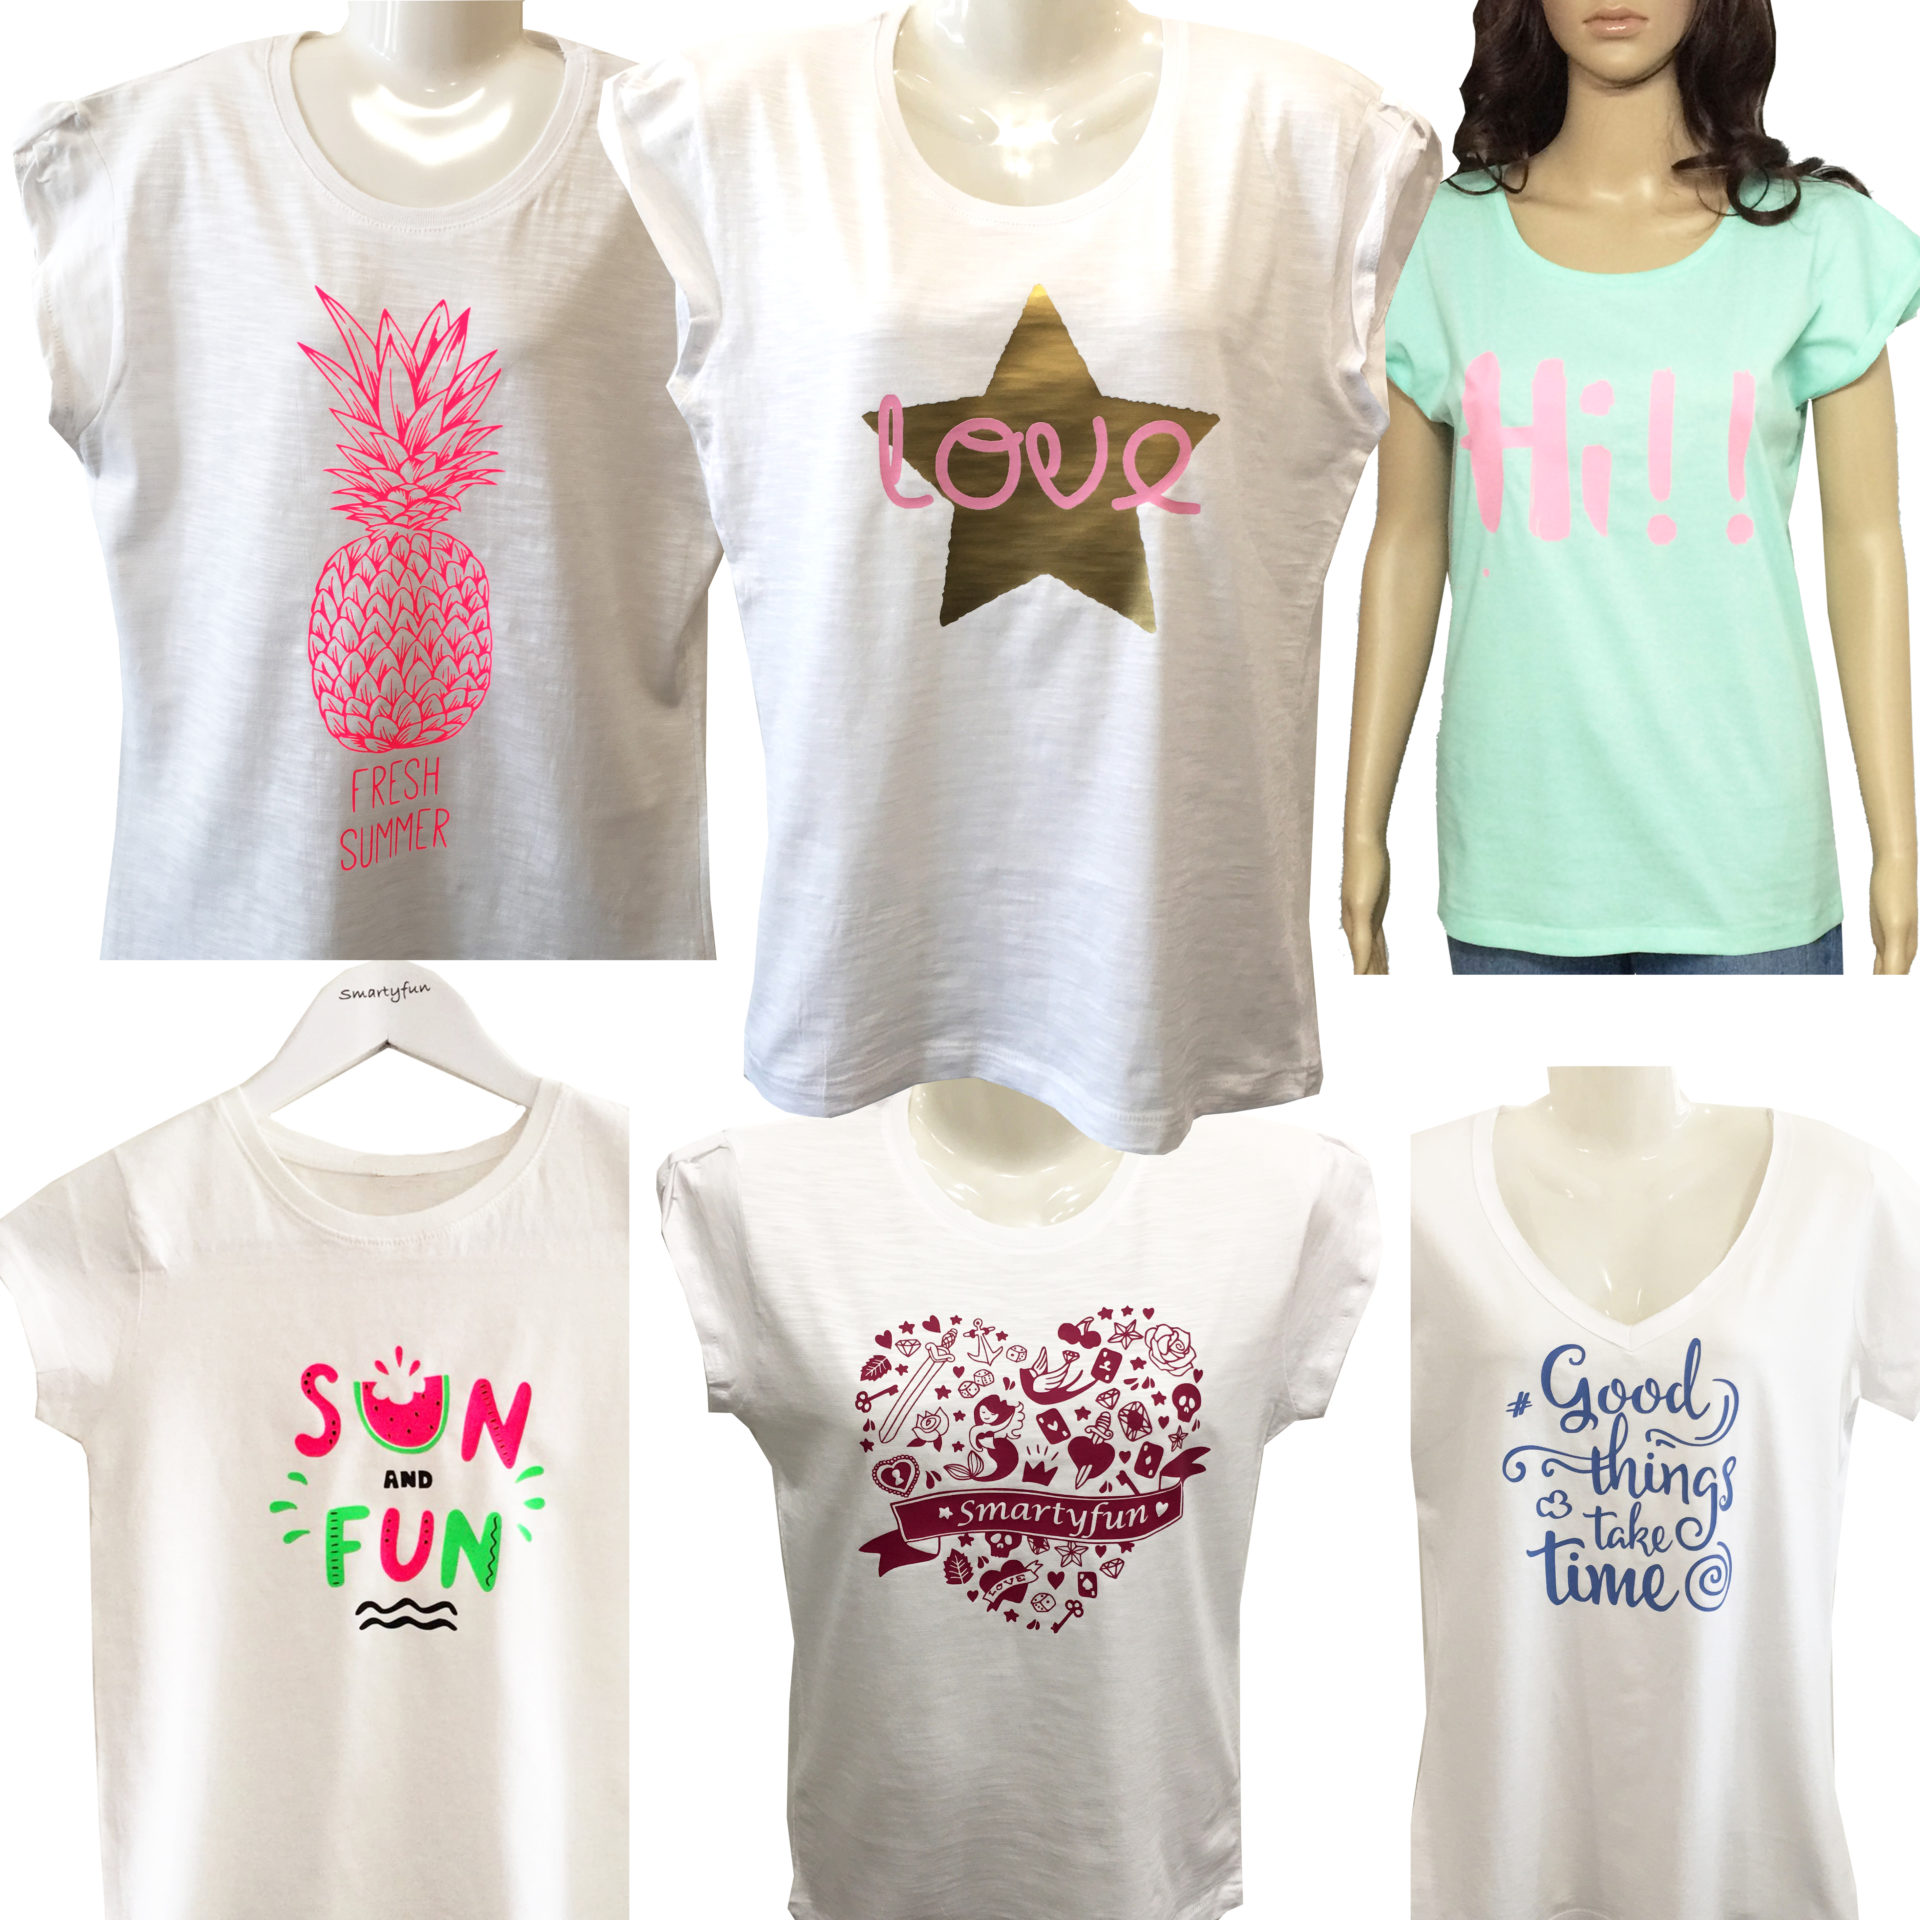 Nuevos modelos de camisetas y diseños Smartyfun para triunfar este verano